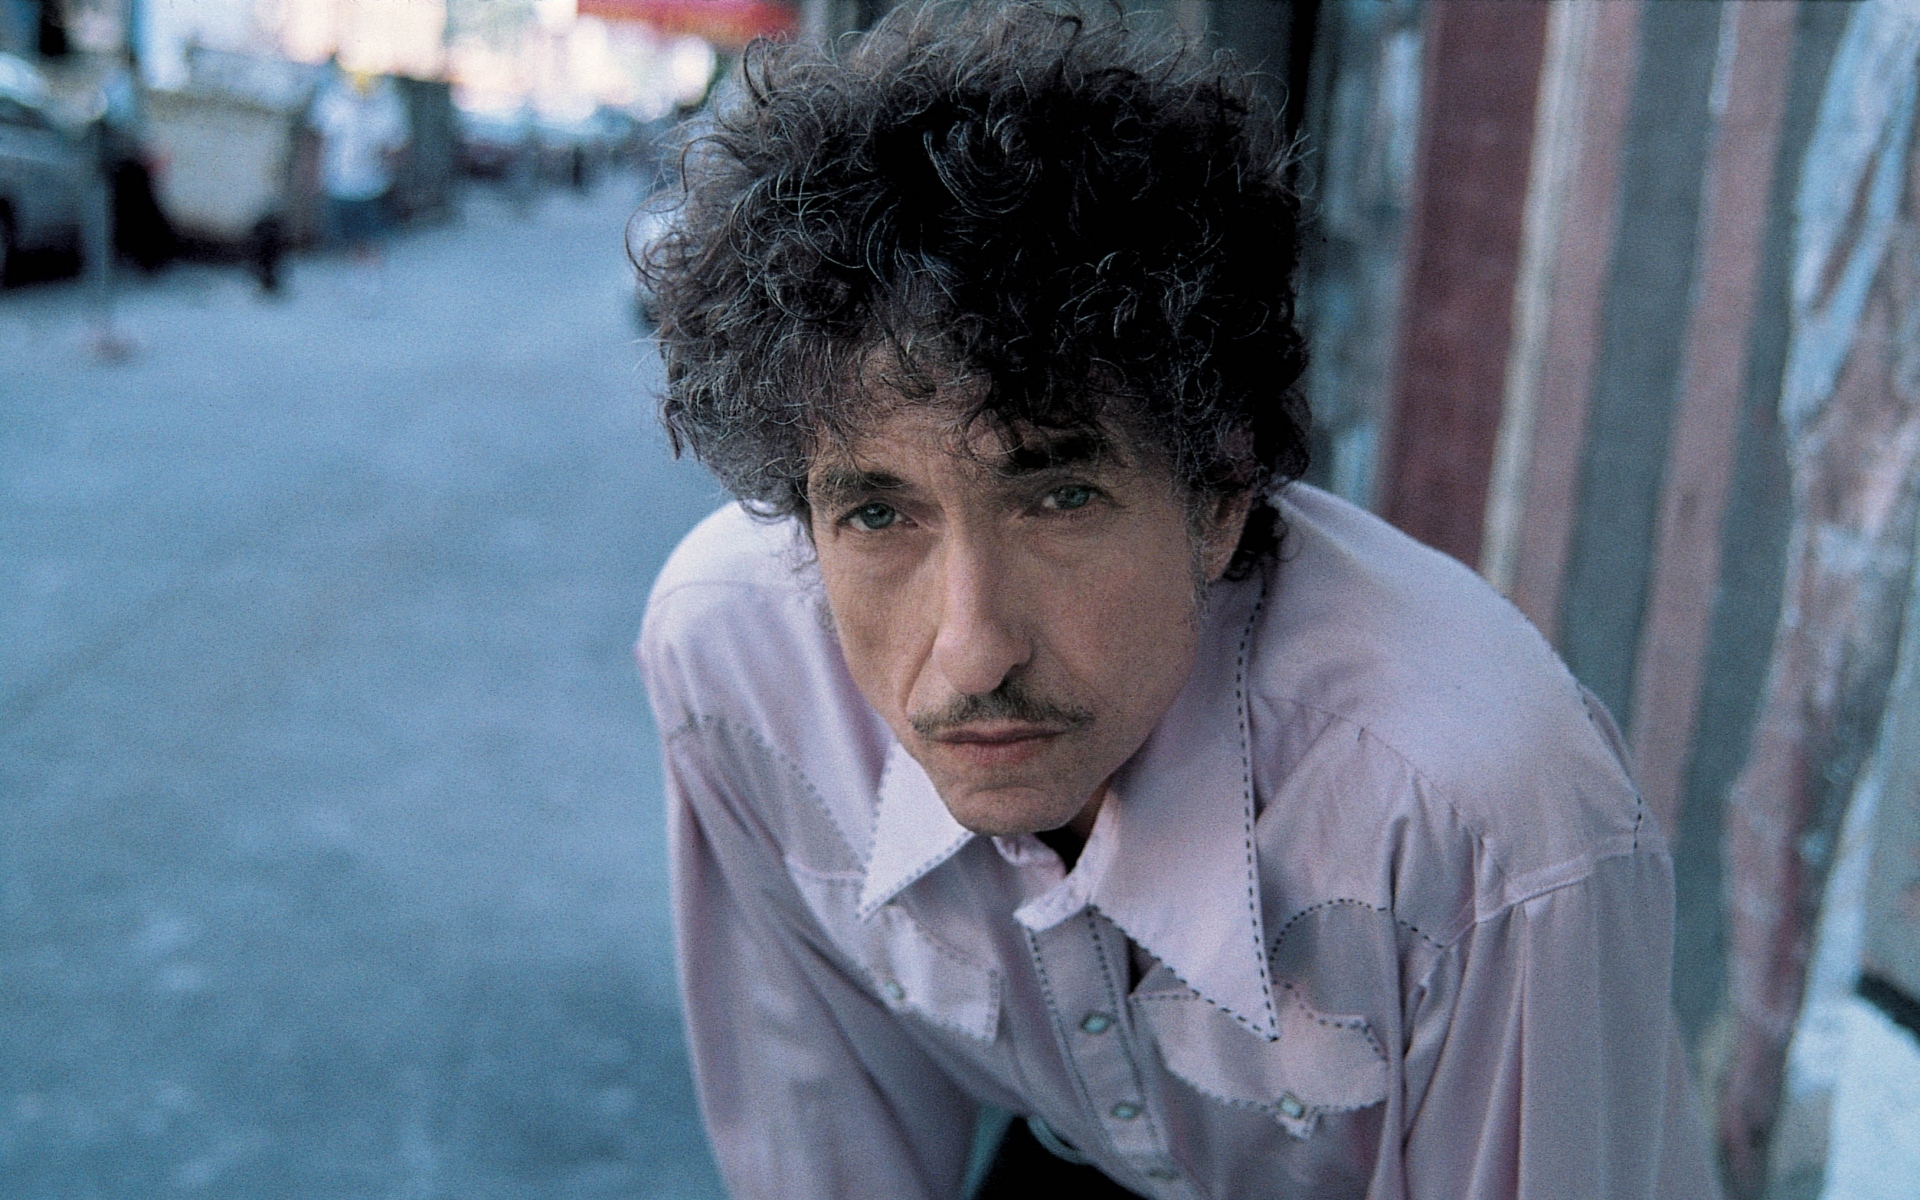 Картинки Боб Дилан, певец, художник, писатель, знаменитость, усы, рубашка фото и обои на рабочий стол